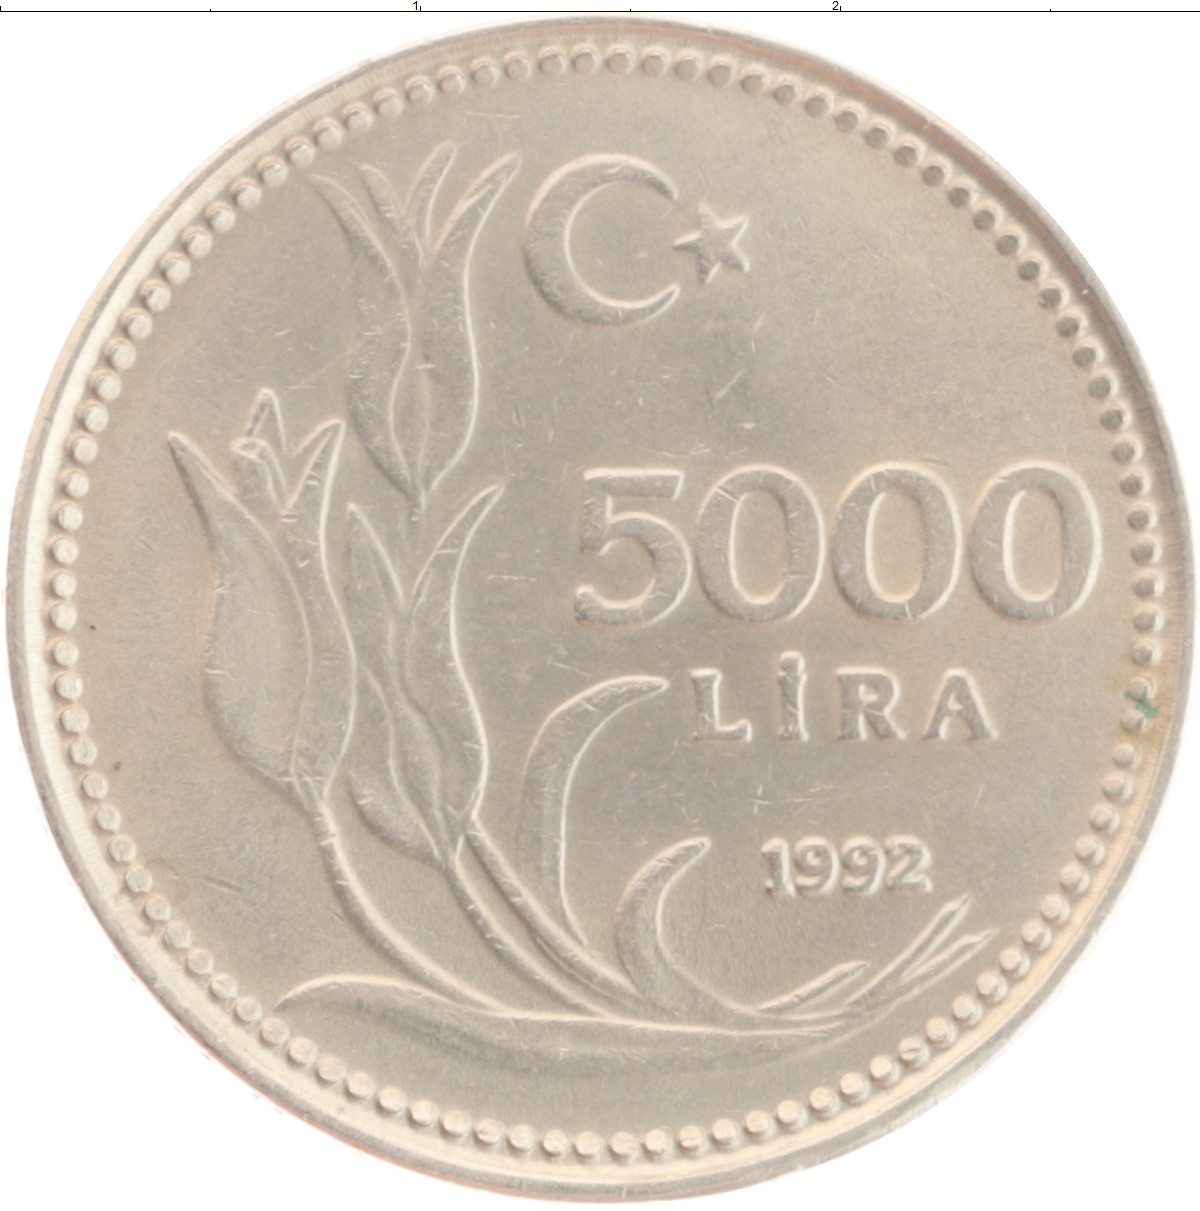 67 в рублях. 5000 Лир монета. 5000 Лир в рублях. Турецкая монета 200 Euro.